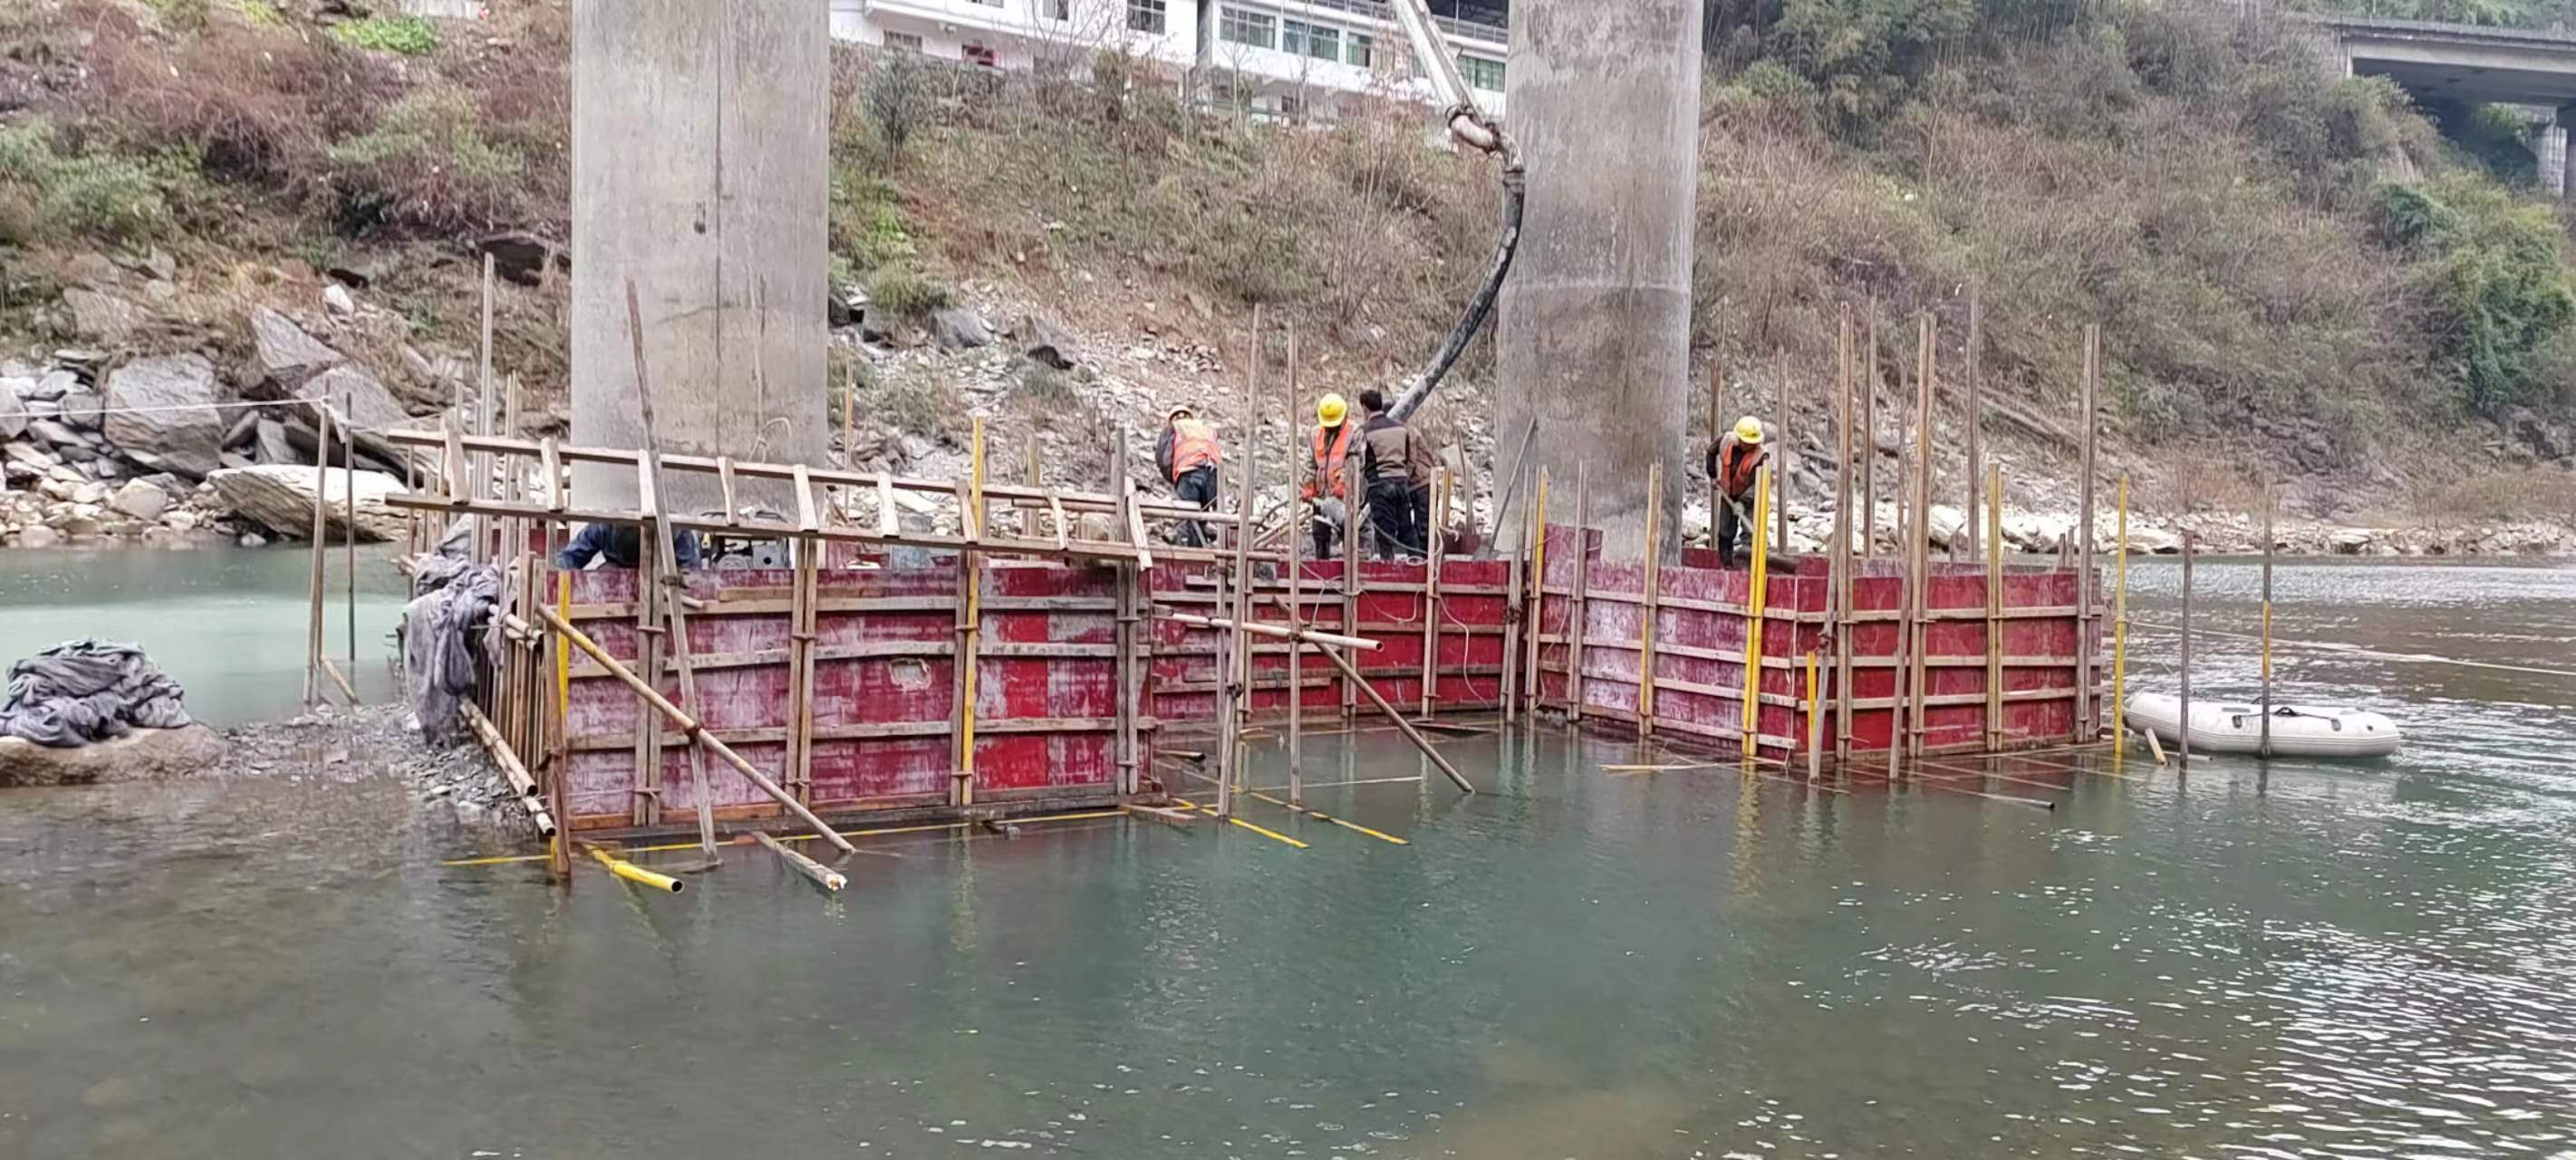 磐石水利工程施工中堤坝渗漏原因以及防渗加固技术